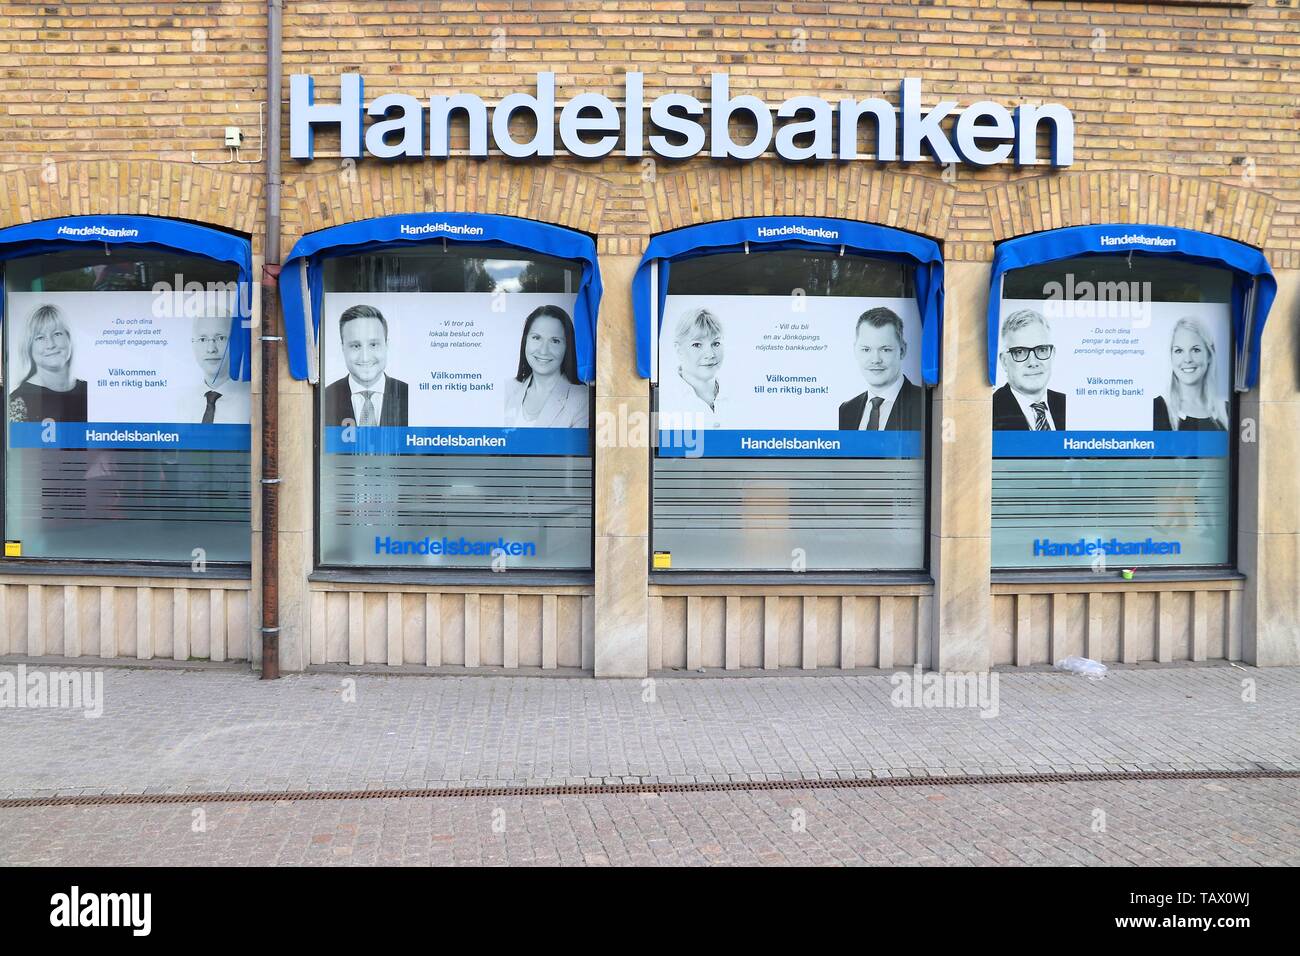 JONKOPING, SWEDEN - AUGUST 25, 2018: Handelsbanken bank in Jonkoping, Sweden.  It is one of largest banks in Sweden with 460 locations Stock Photo - Alamy